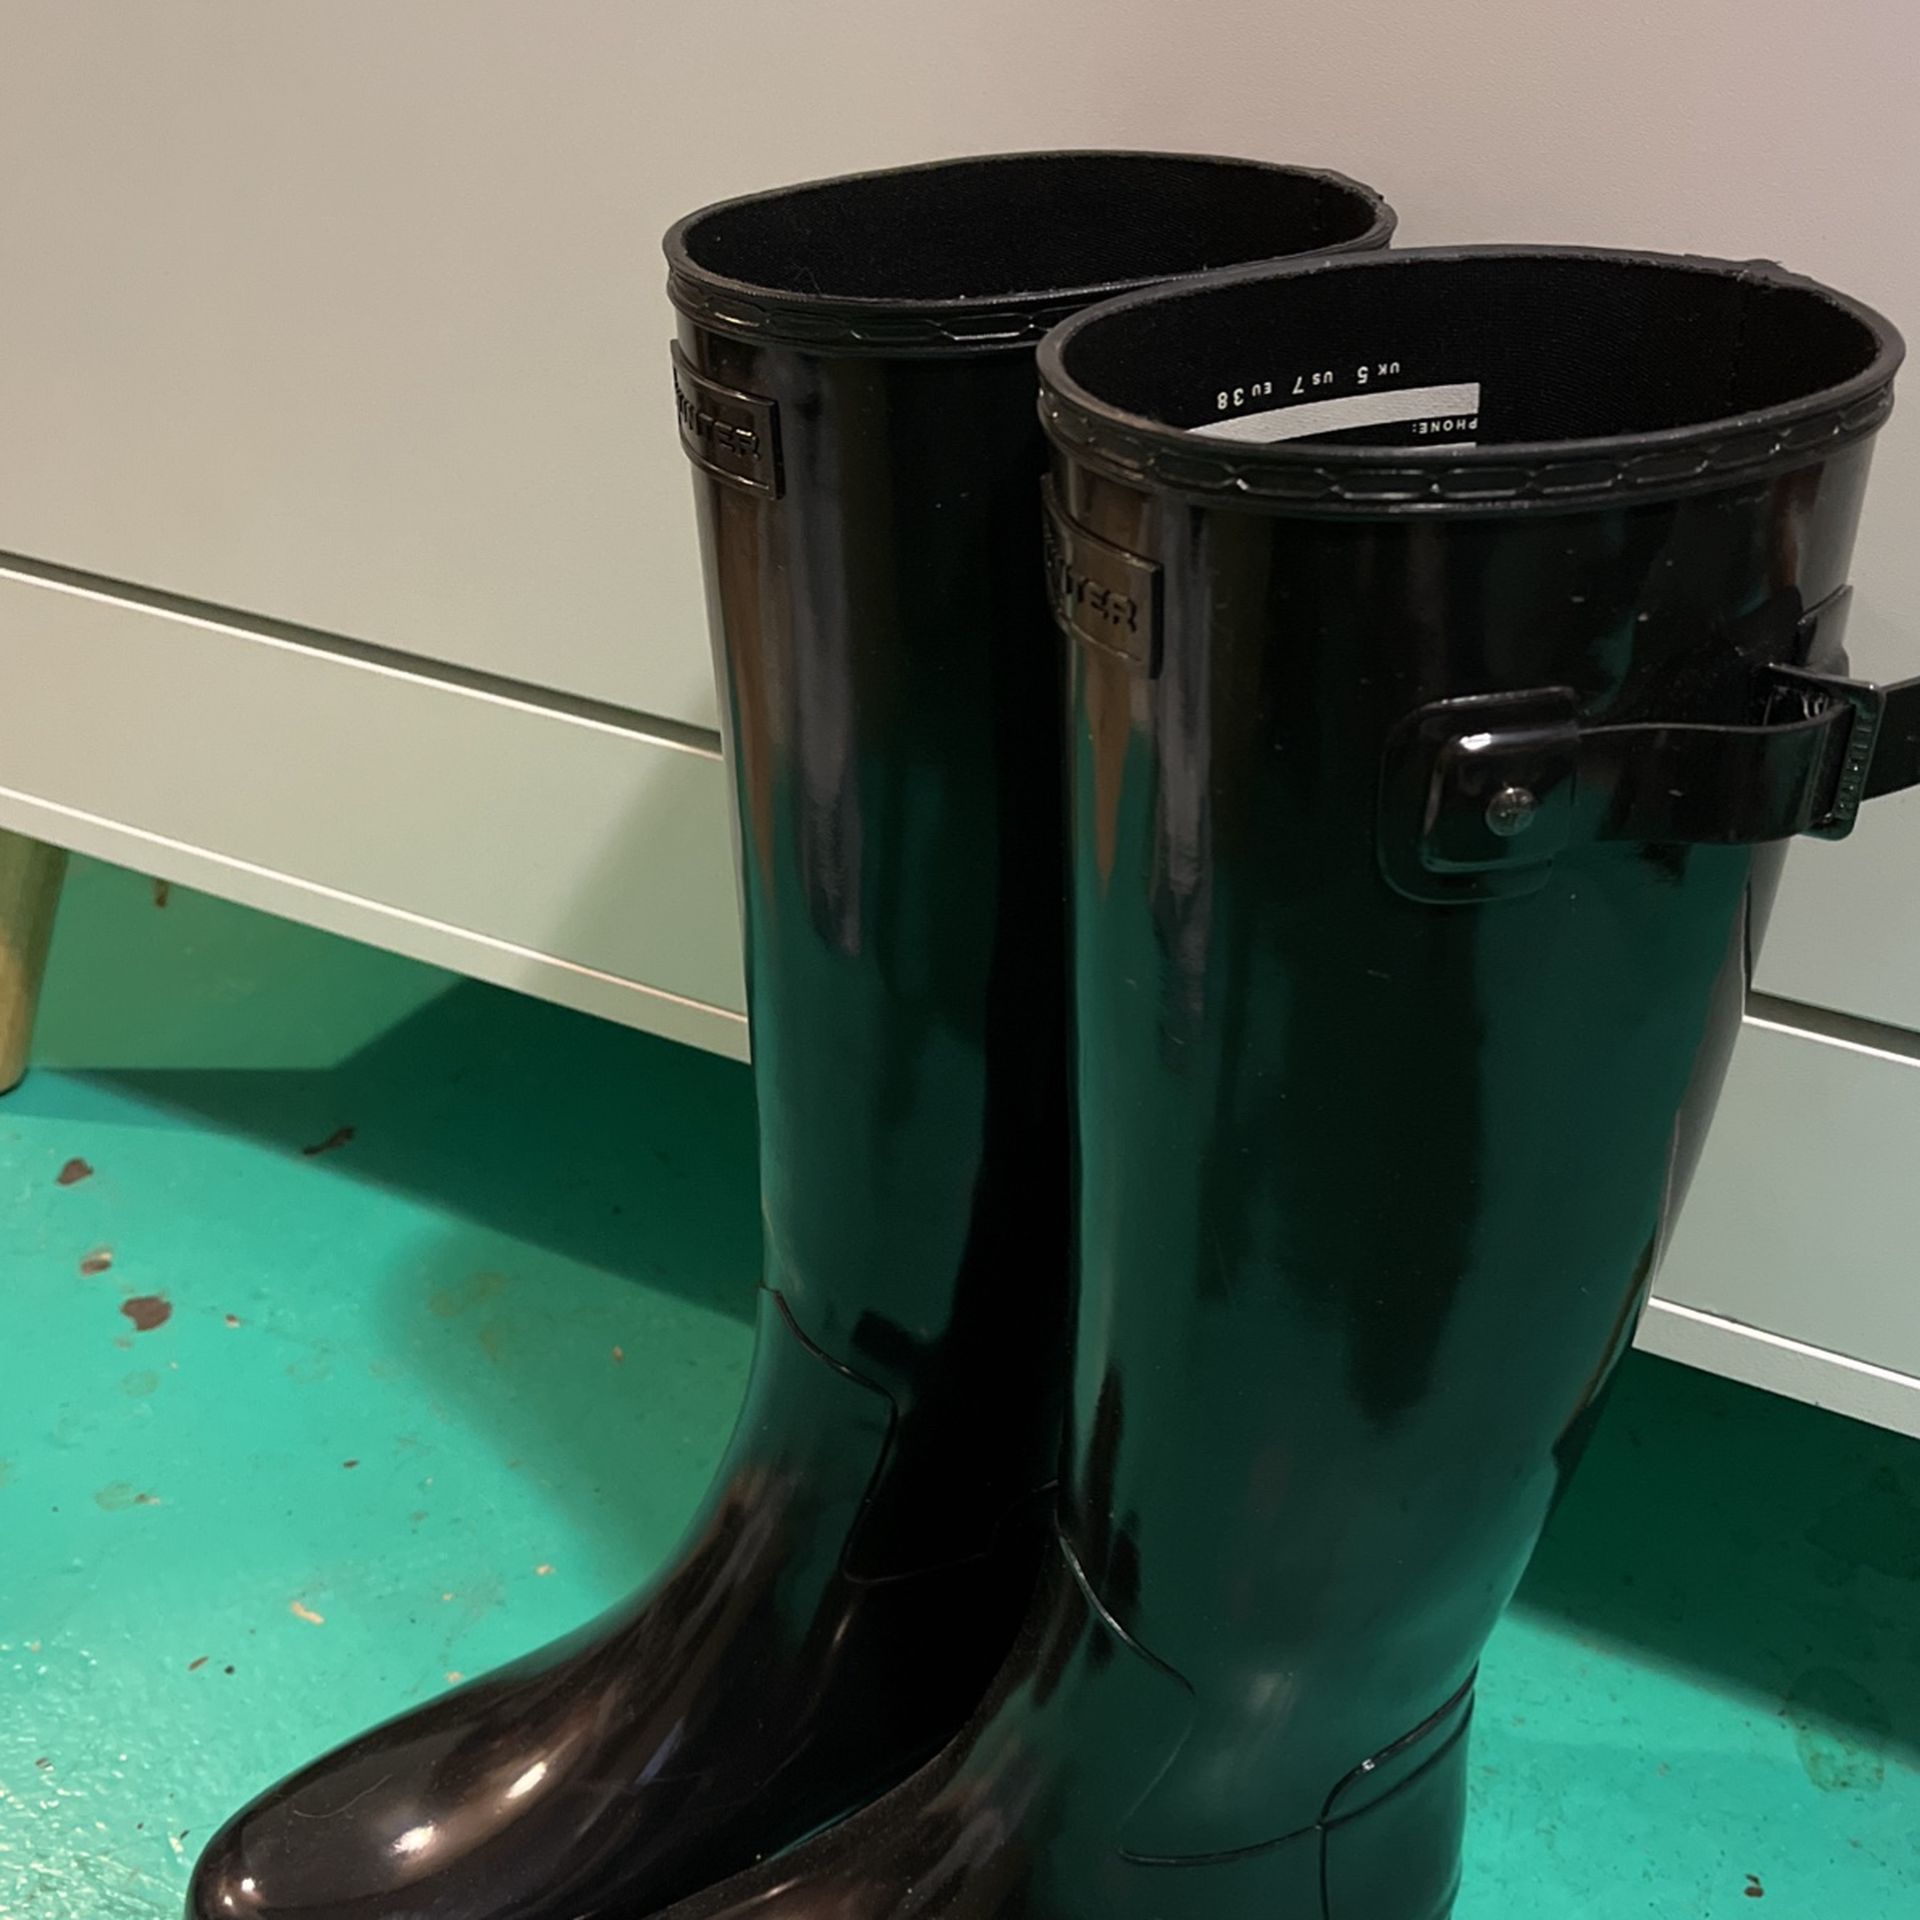 Rain Boots 